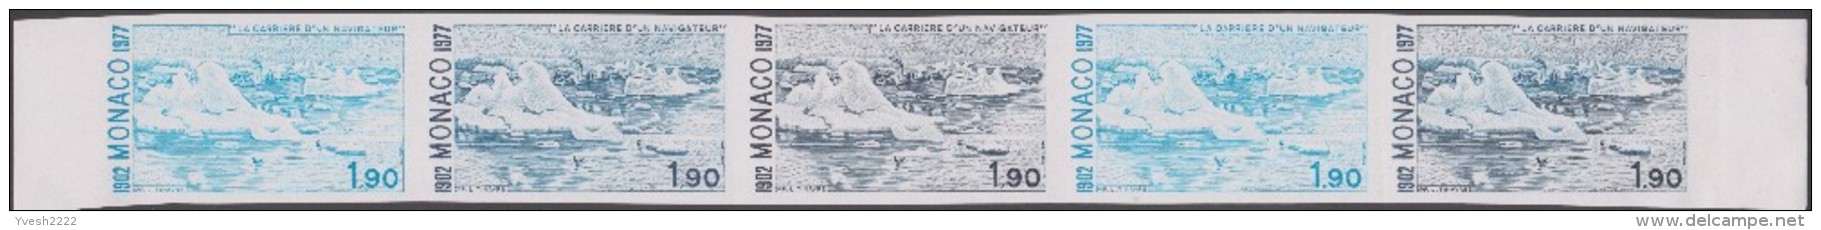 Monaco 1977 Y&T 1103/113 9 bandes de 5 essais de couleurs. Arctique, voilier, phoque, canard, iceberg, chasse, neige